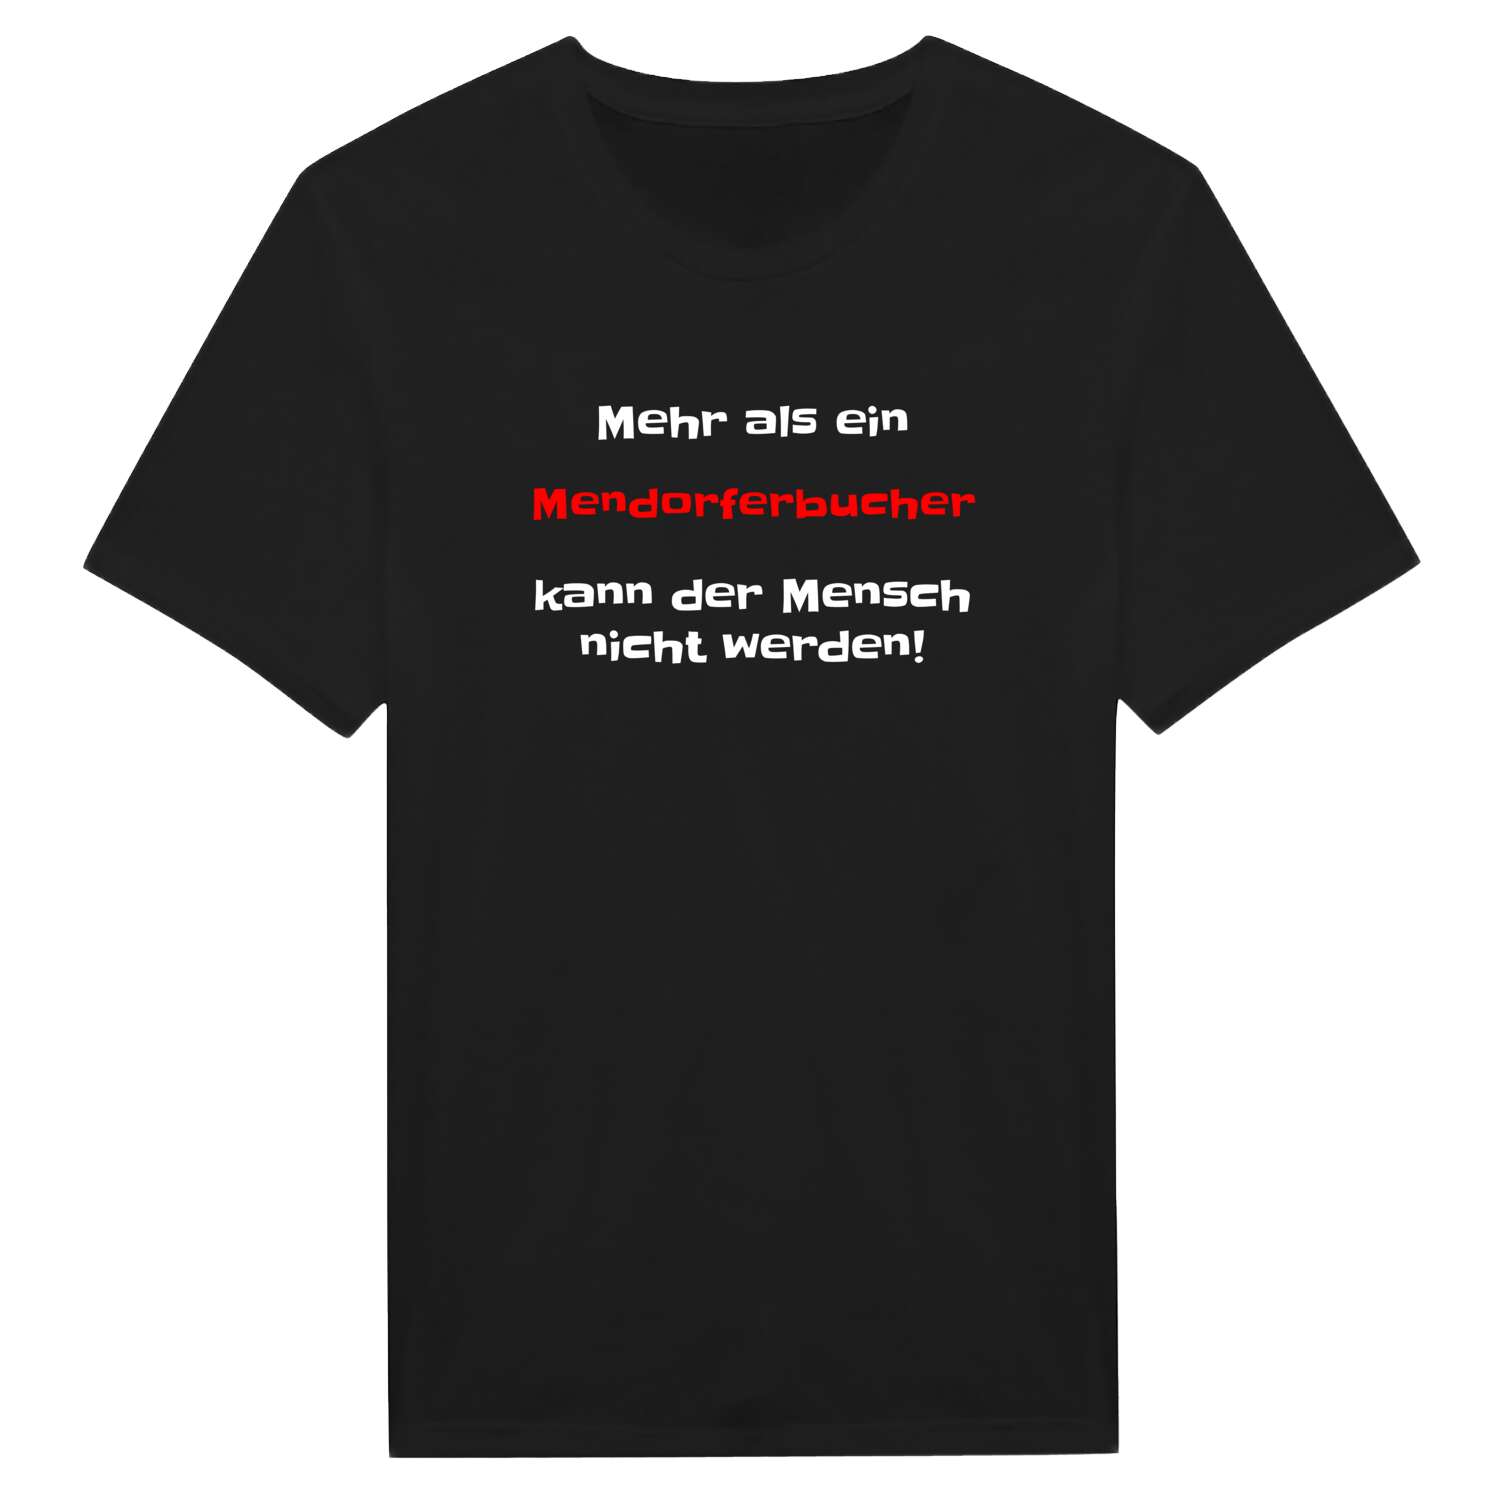 Mendorferbuch T-Shirt »Mehr als ein«